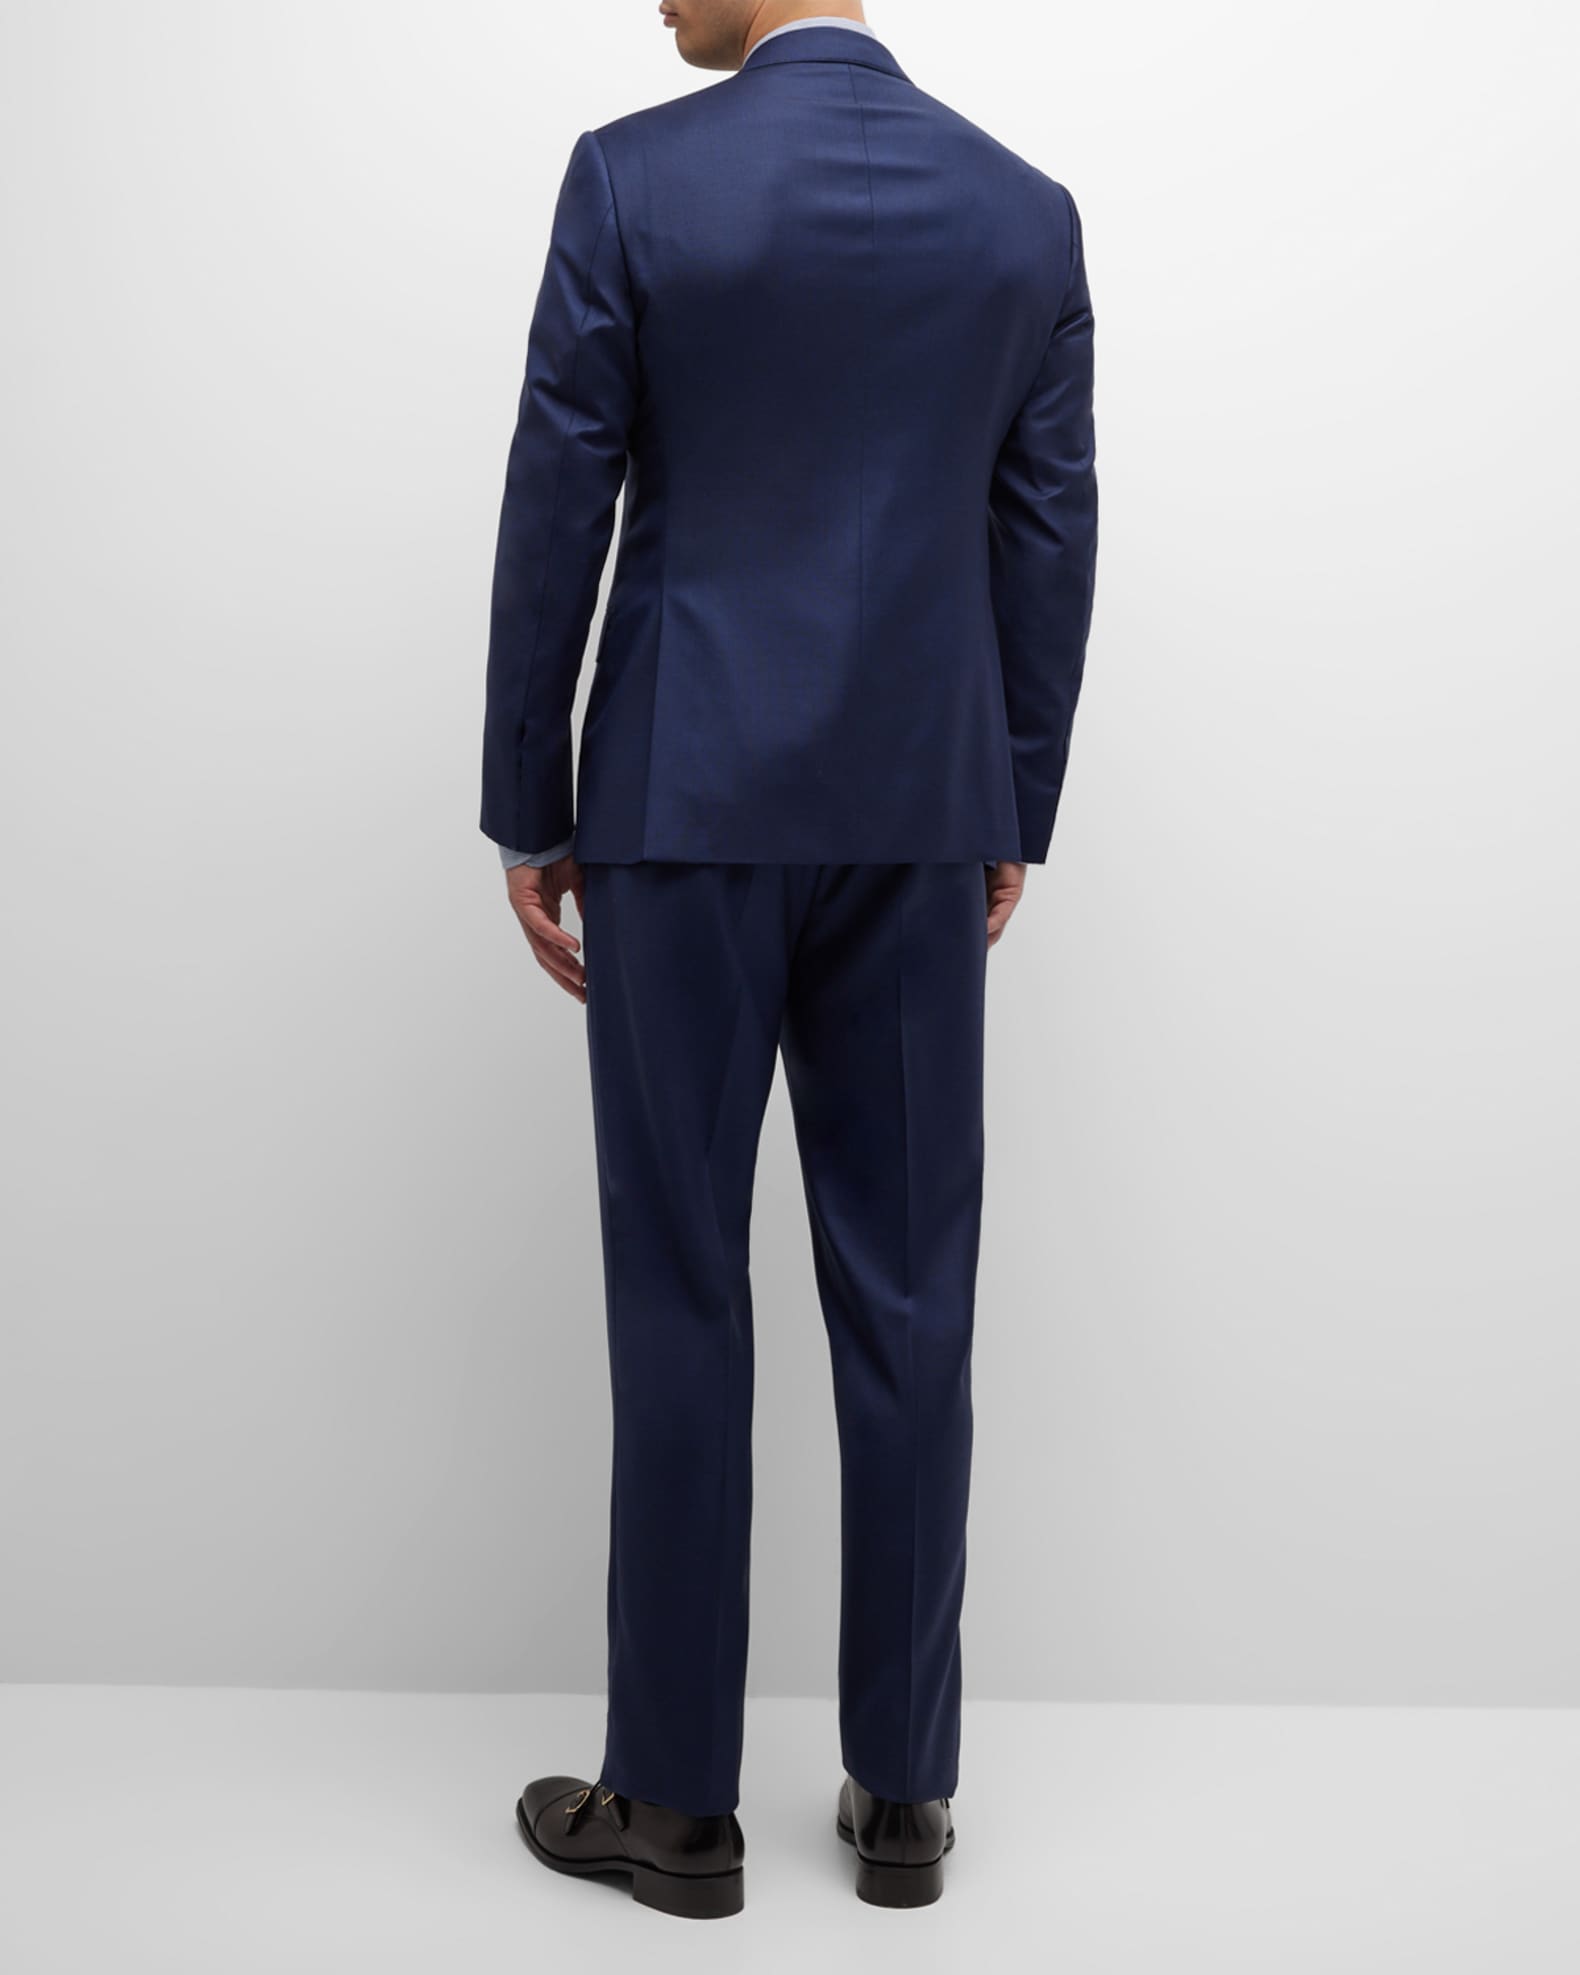 Giorgio Armani Men's Solid Wool Suit | Neiman Marcus